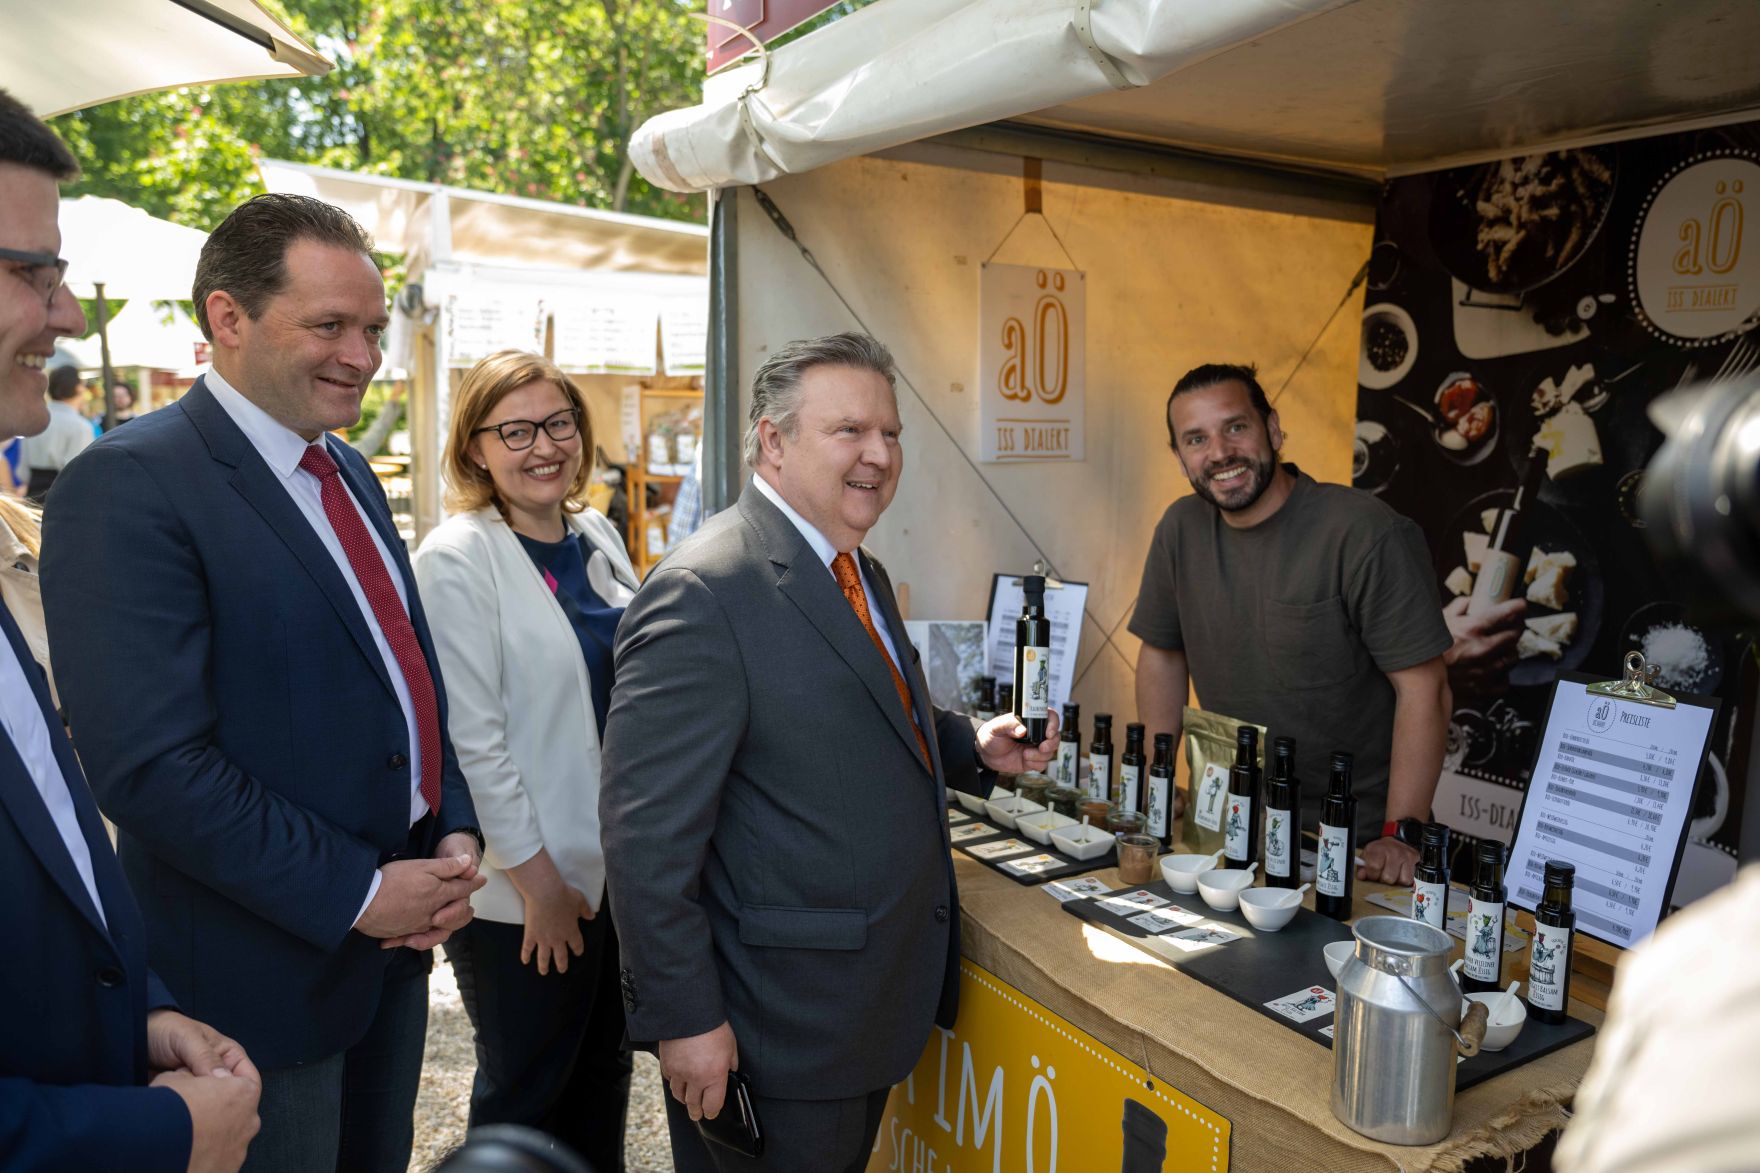 Herr Bundesminister besuchte gemeinsam mit B&uuml;rgermeister der Stadt Wien Michael Ludwig das Genussfestival im Stadtpark.